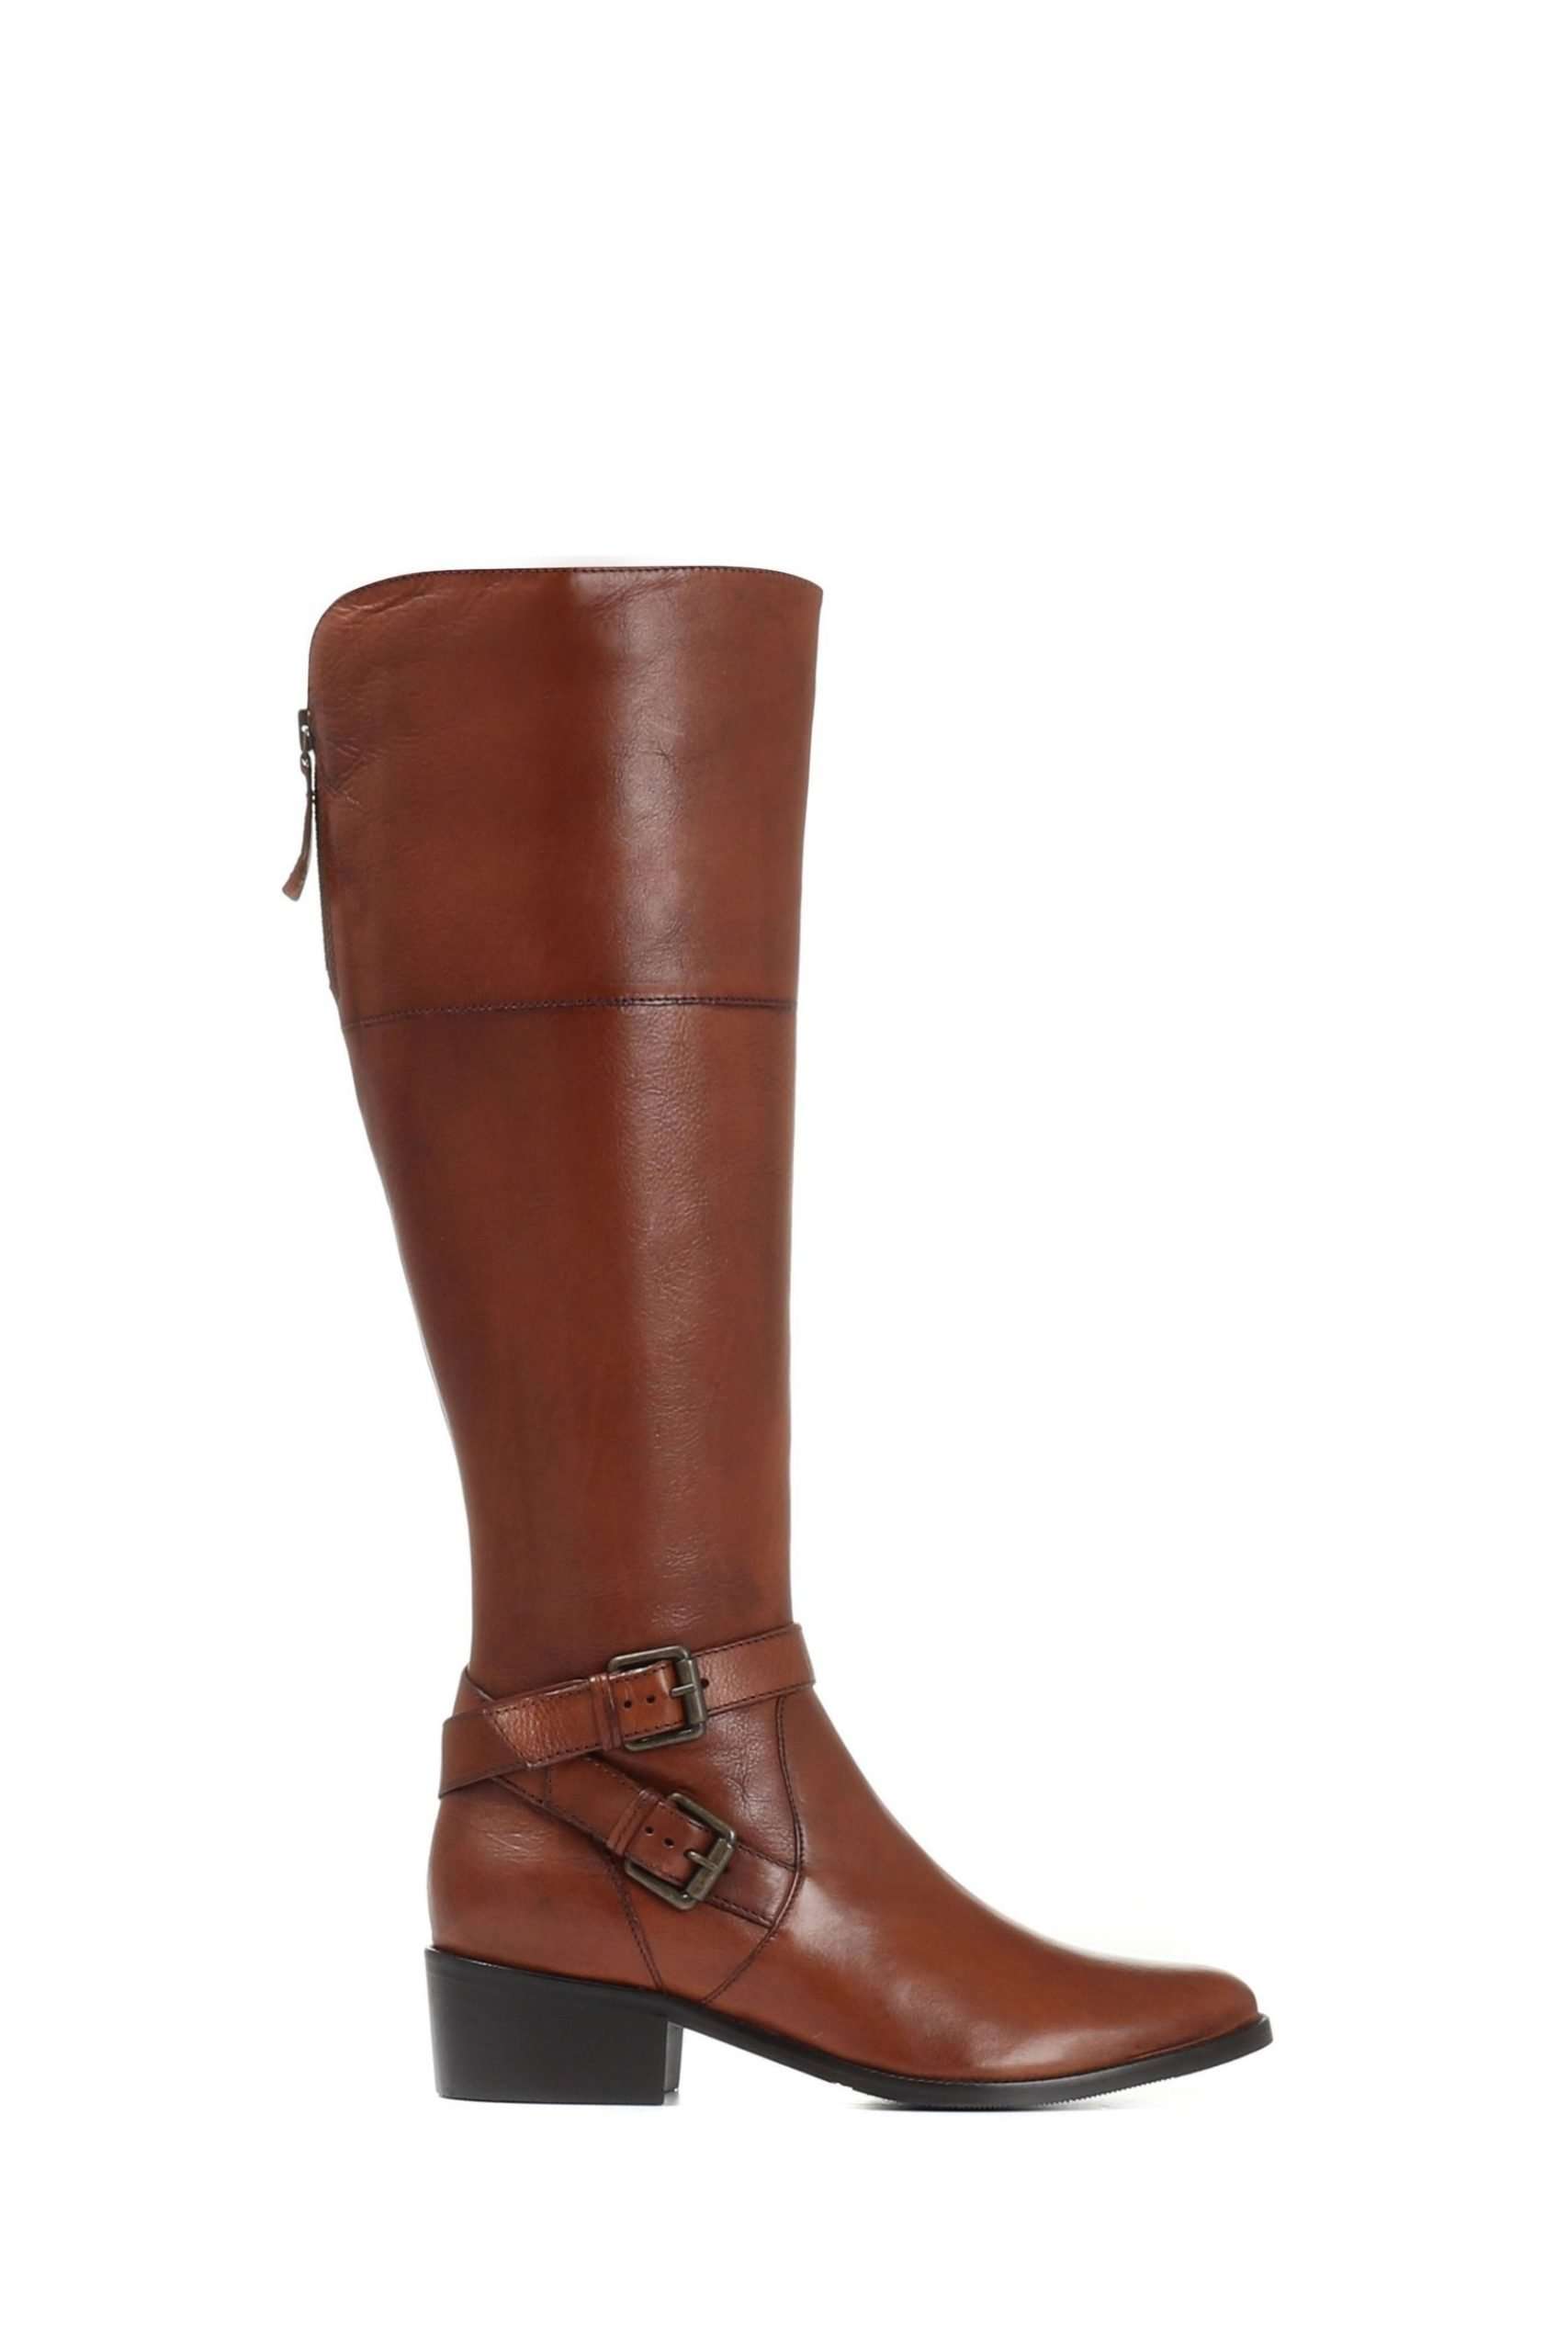 Buy Jones Bootmaker Brown Wide Fit Leather Ladies Knee ...